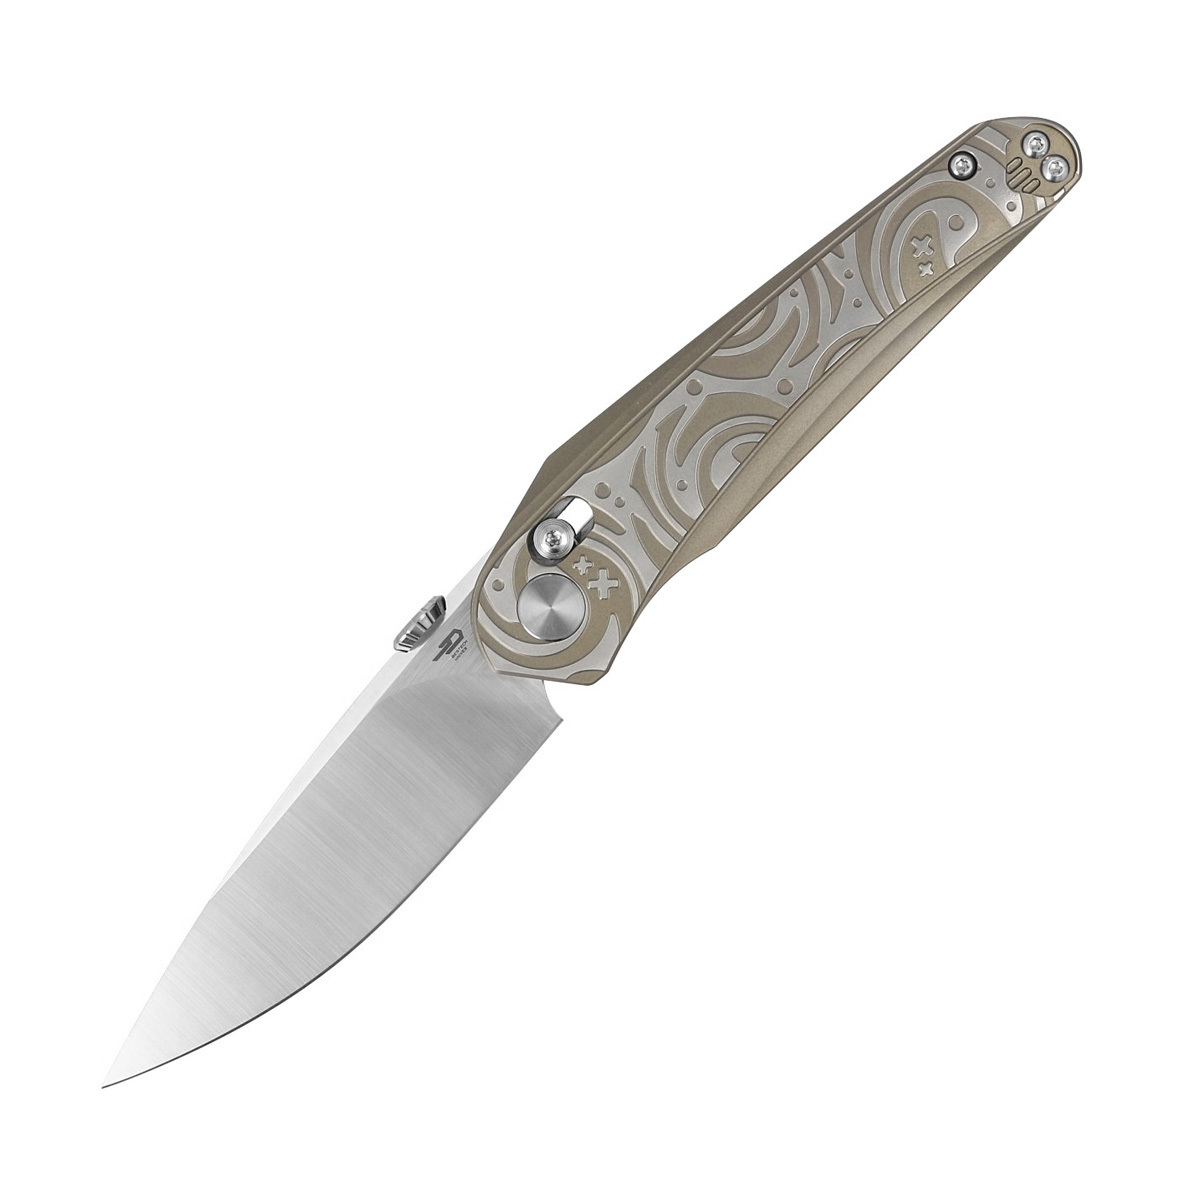 Складной нож Bestech Mothus, сталь M390, Crossbar Lock, рукоять титан складной нож bestech lion d2 песочный